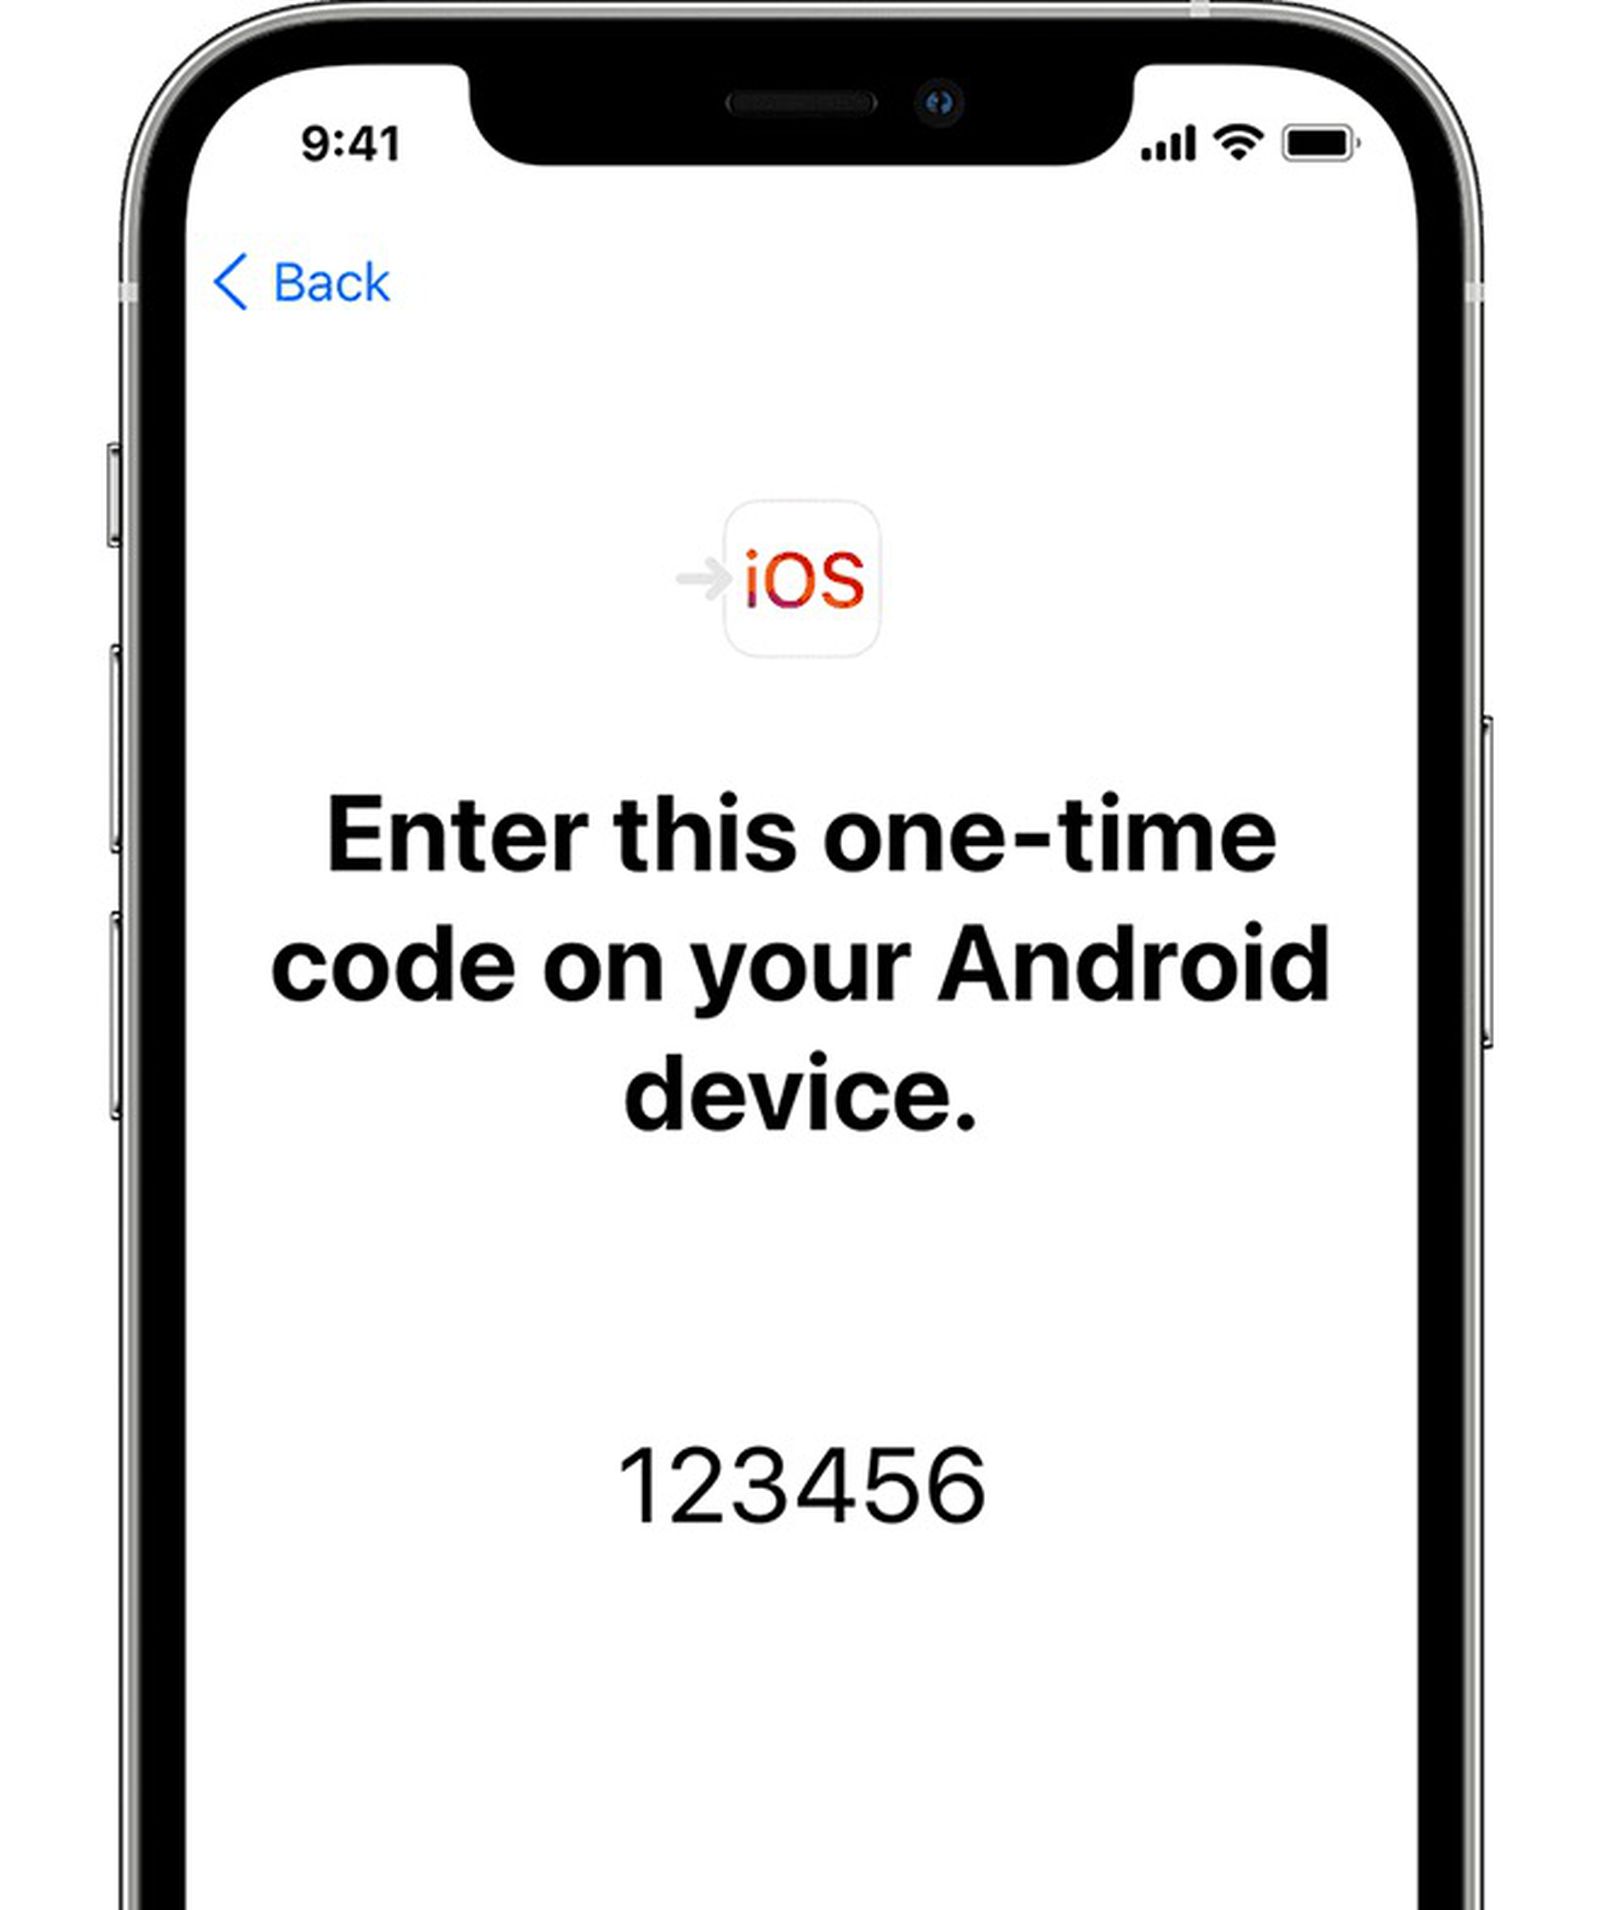 على هاتفك الذي يعمل بنظام Android ، افتح تطبيق Move to iOS واتبع التعليمات التي تظهر على الشاشة.    على iPhone ، انقر فوق متابعة عندما ترى شاشة Android Transfer ، ثم انتظر حتى يظهر رمز مكون من عشرة أو ستة أرقام.